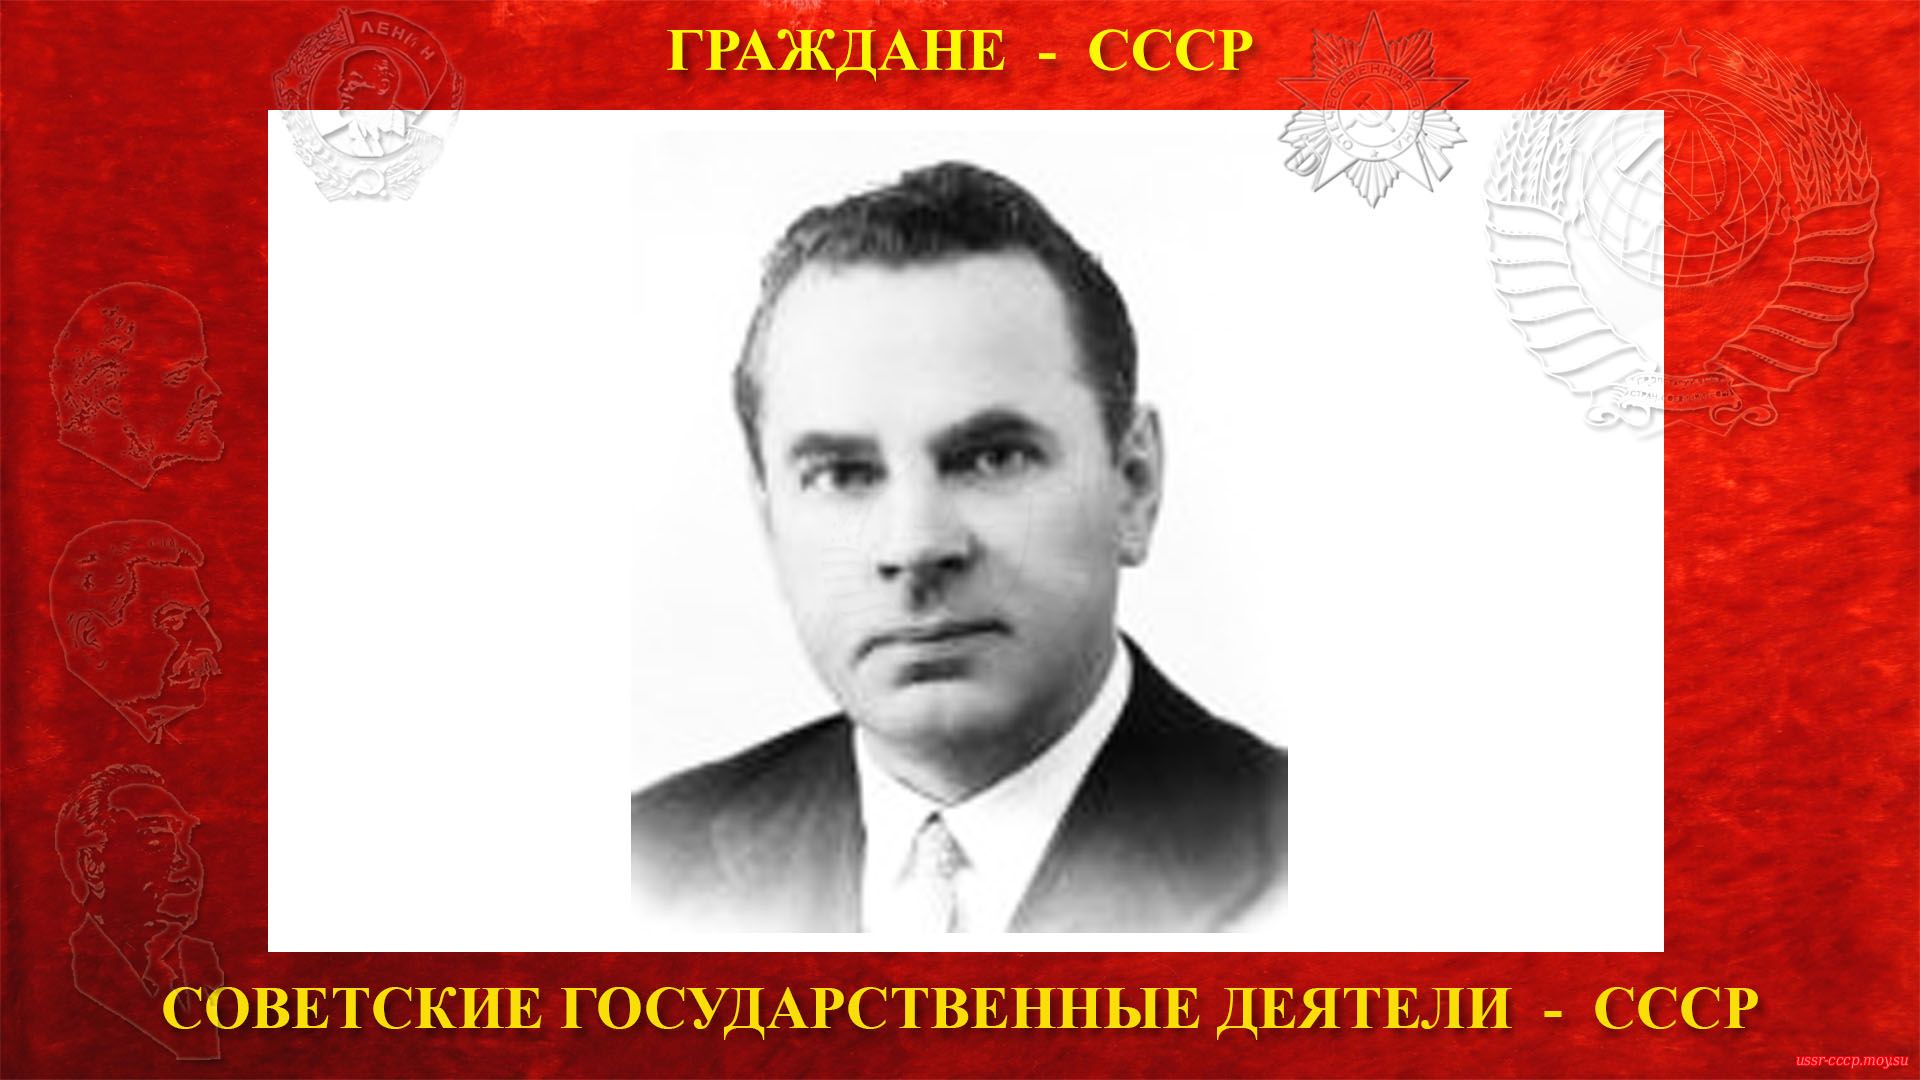 Михайлов Николай Александрович — Советский партийный и государственный деятель СССР (10.10.1906—25.05.1982)